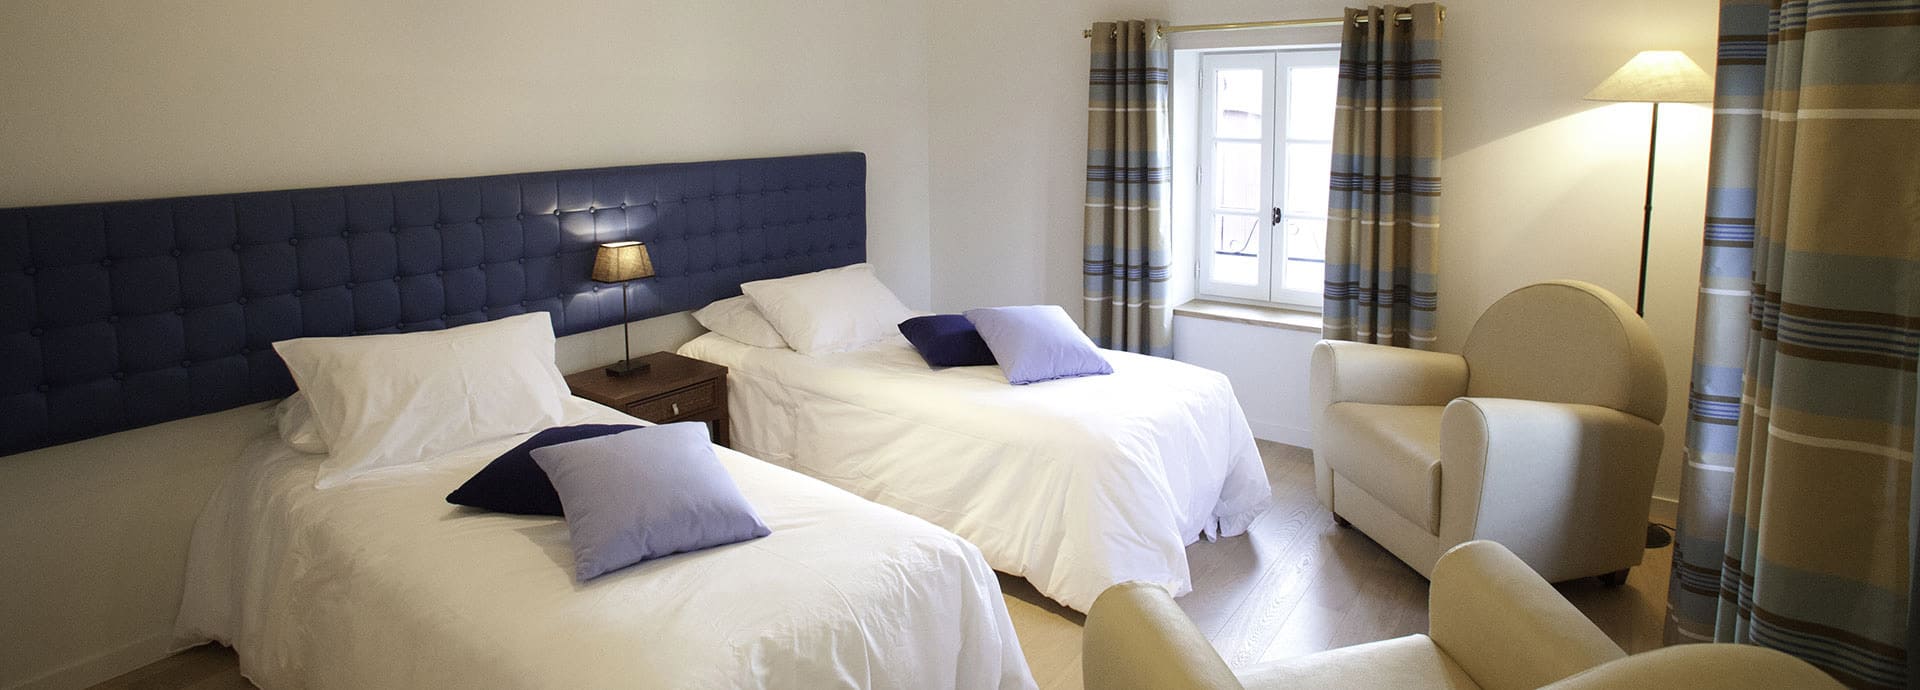 Slaapkamer met 2 éénpersoonsbedden van vakantiehuis Silène